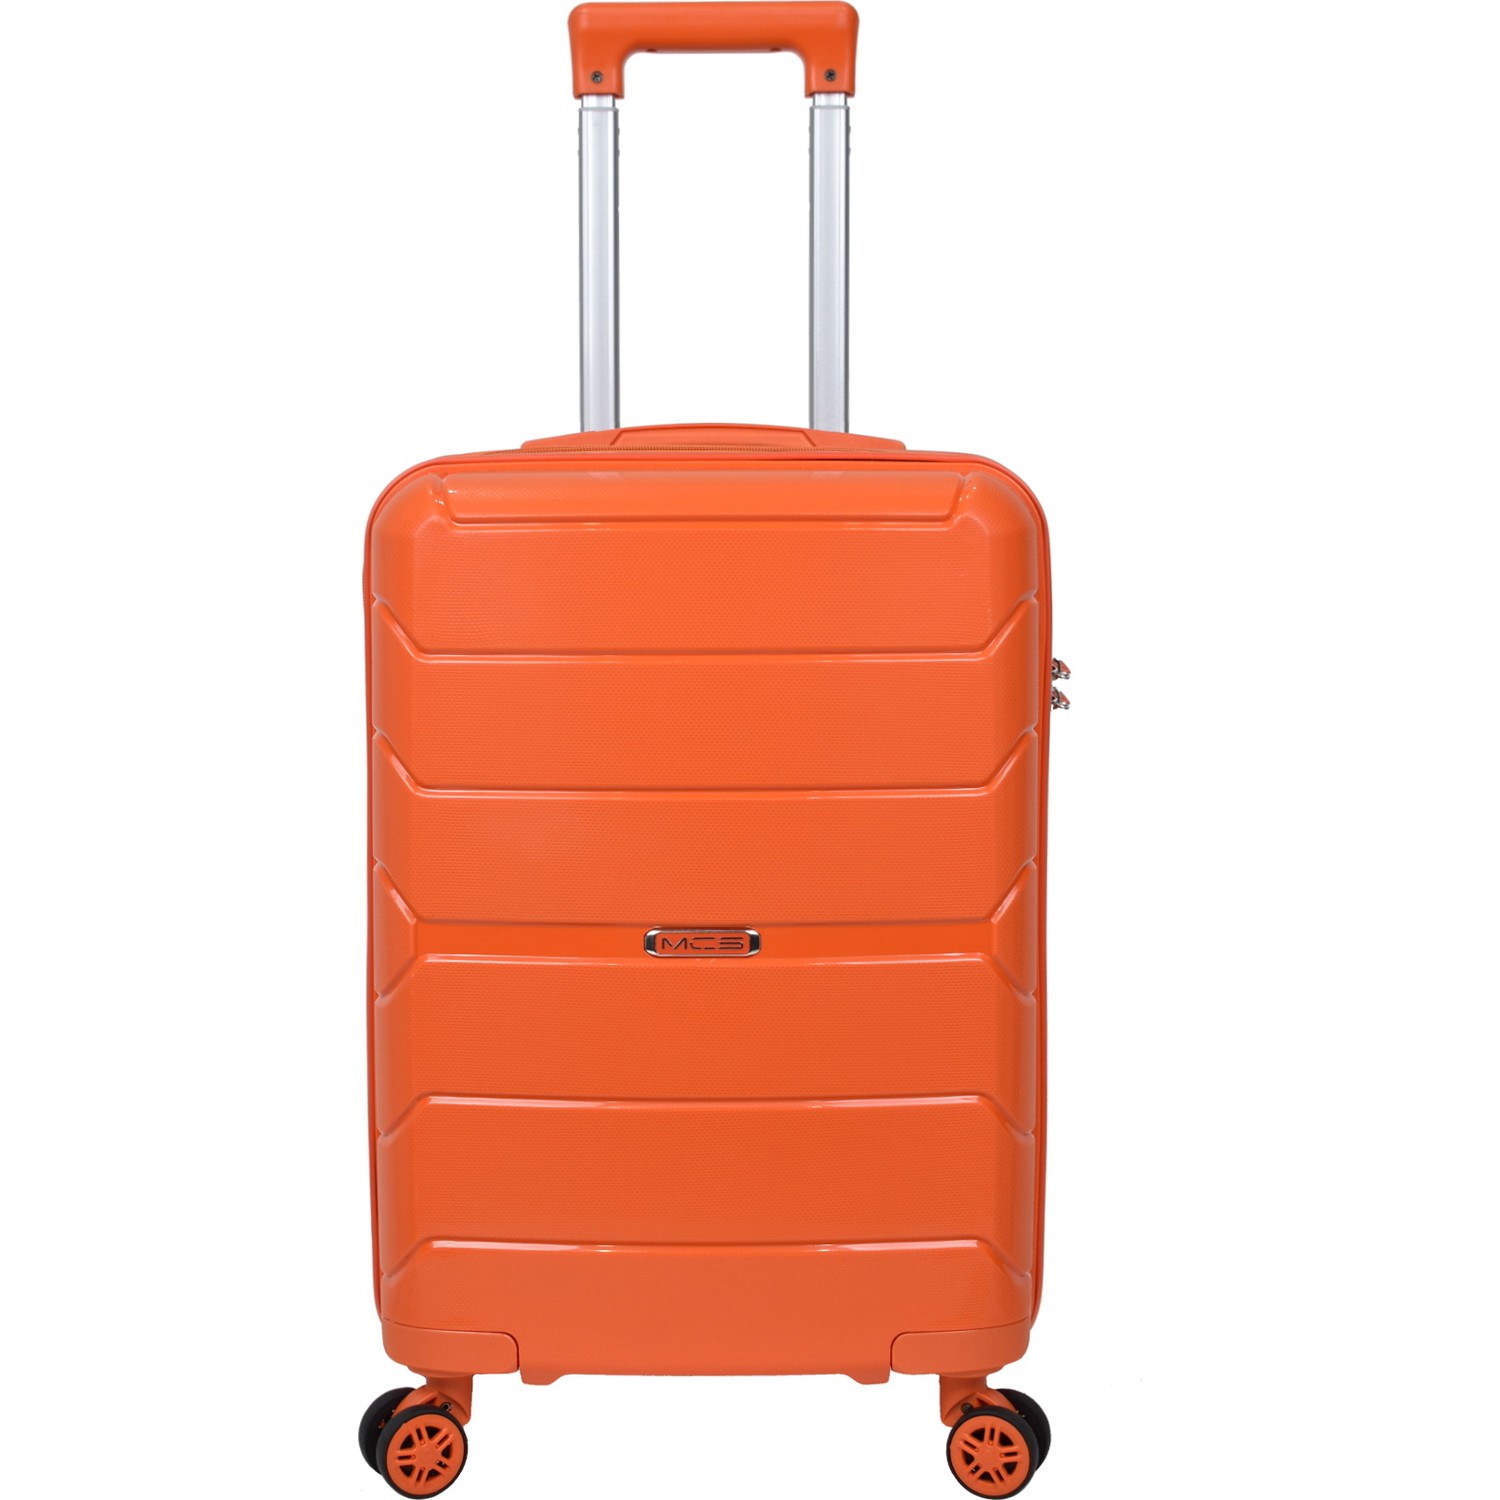 Маленький чемодан для ручьной клади из полипропилена MCS V366 S ORANGE Для 8-10 кг!